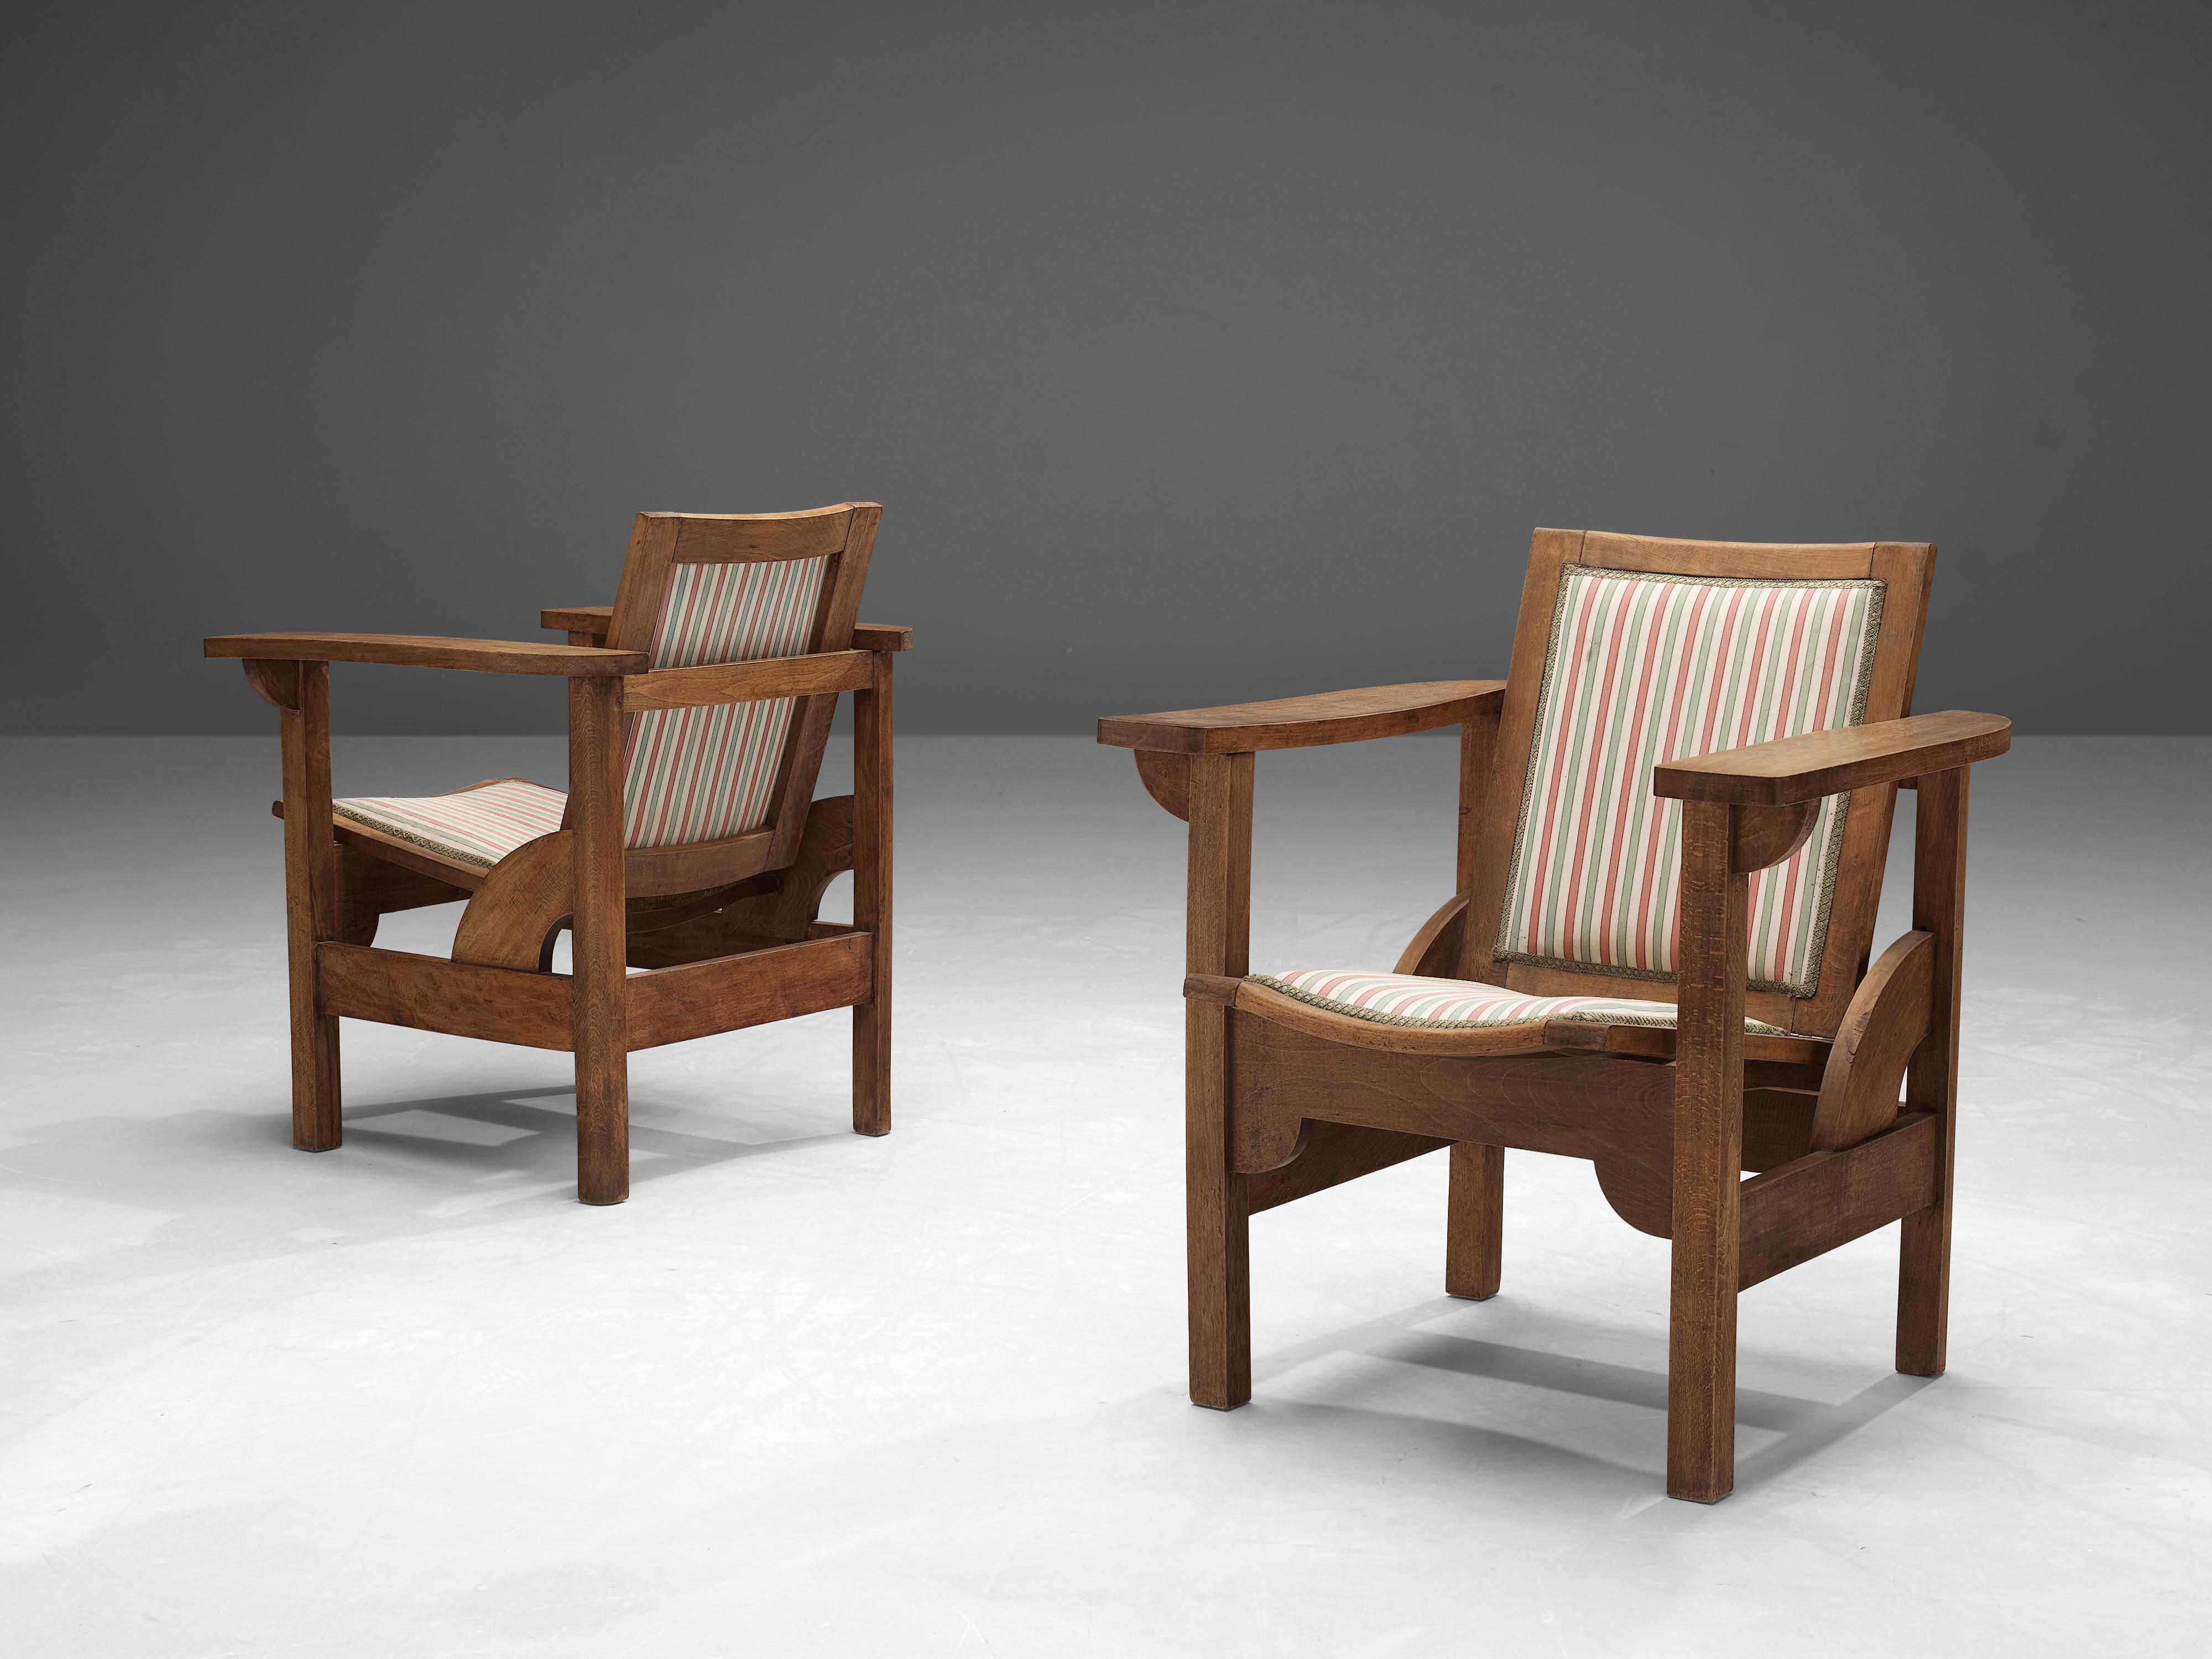 Pierre Dariel, Paar Hendaye-Sessel, Buche, Stoff, Frankreich, 1930er Jahre

Ein Paar Sessel, entworfen von Pierre Dariel in den 1930er Jahren. Die Struktur besteht vollständig aus Buche, während Sitz und Rückenlehne gepolstert sind. Einzigartig an